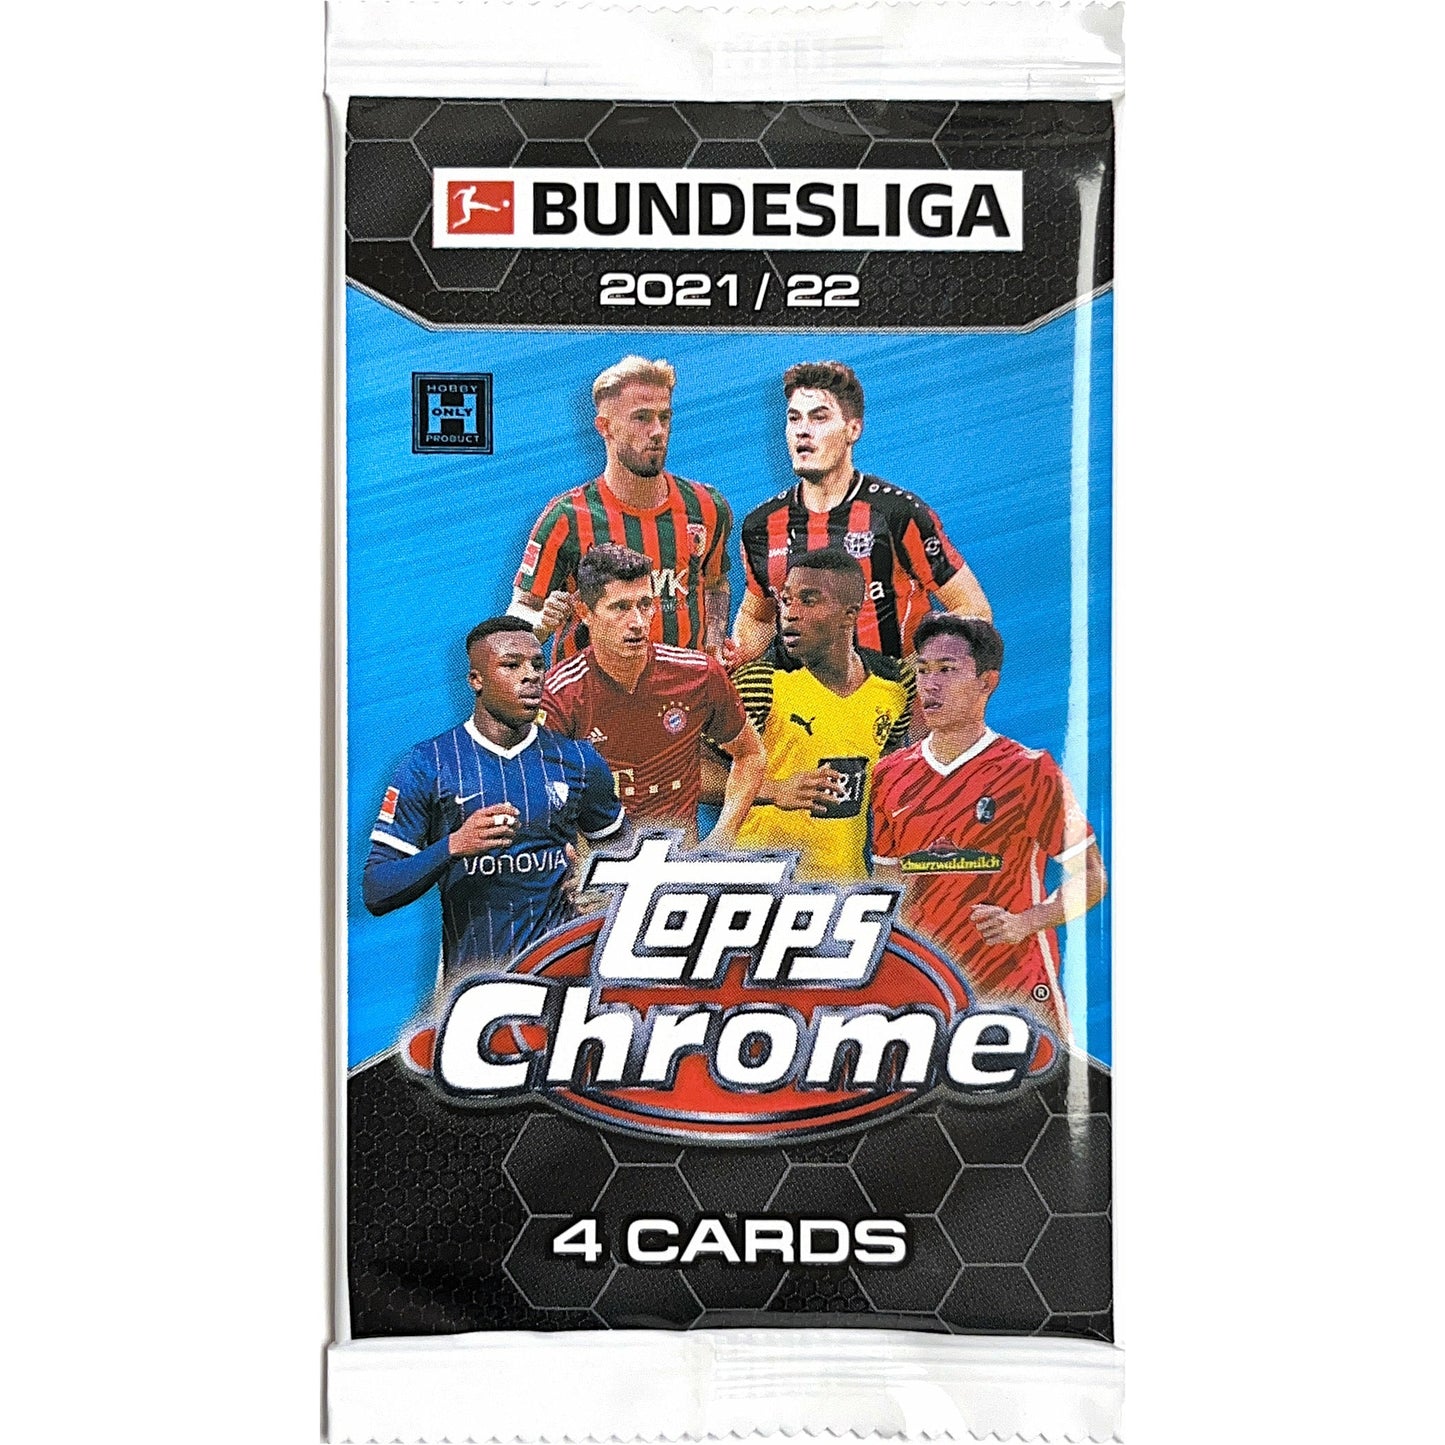 2021-22 Topps Chrome Bundesliga Soccer Hobby Pack